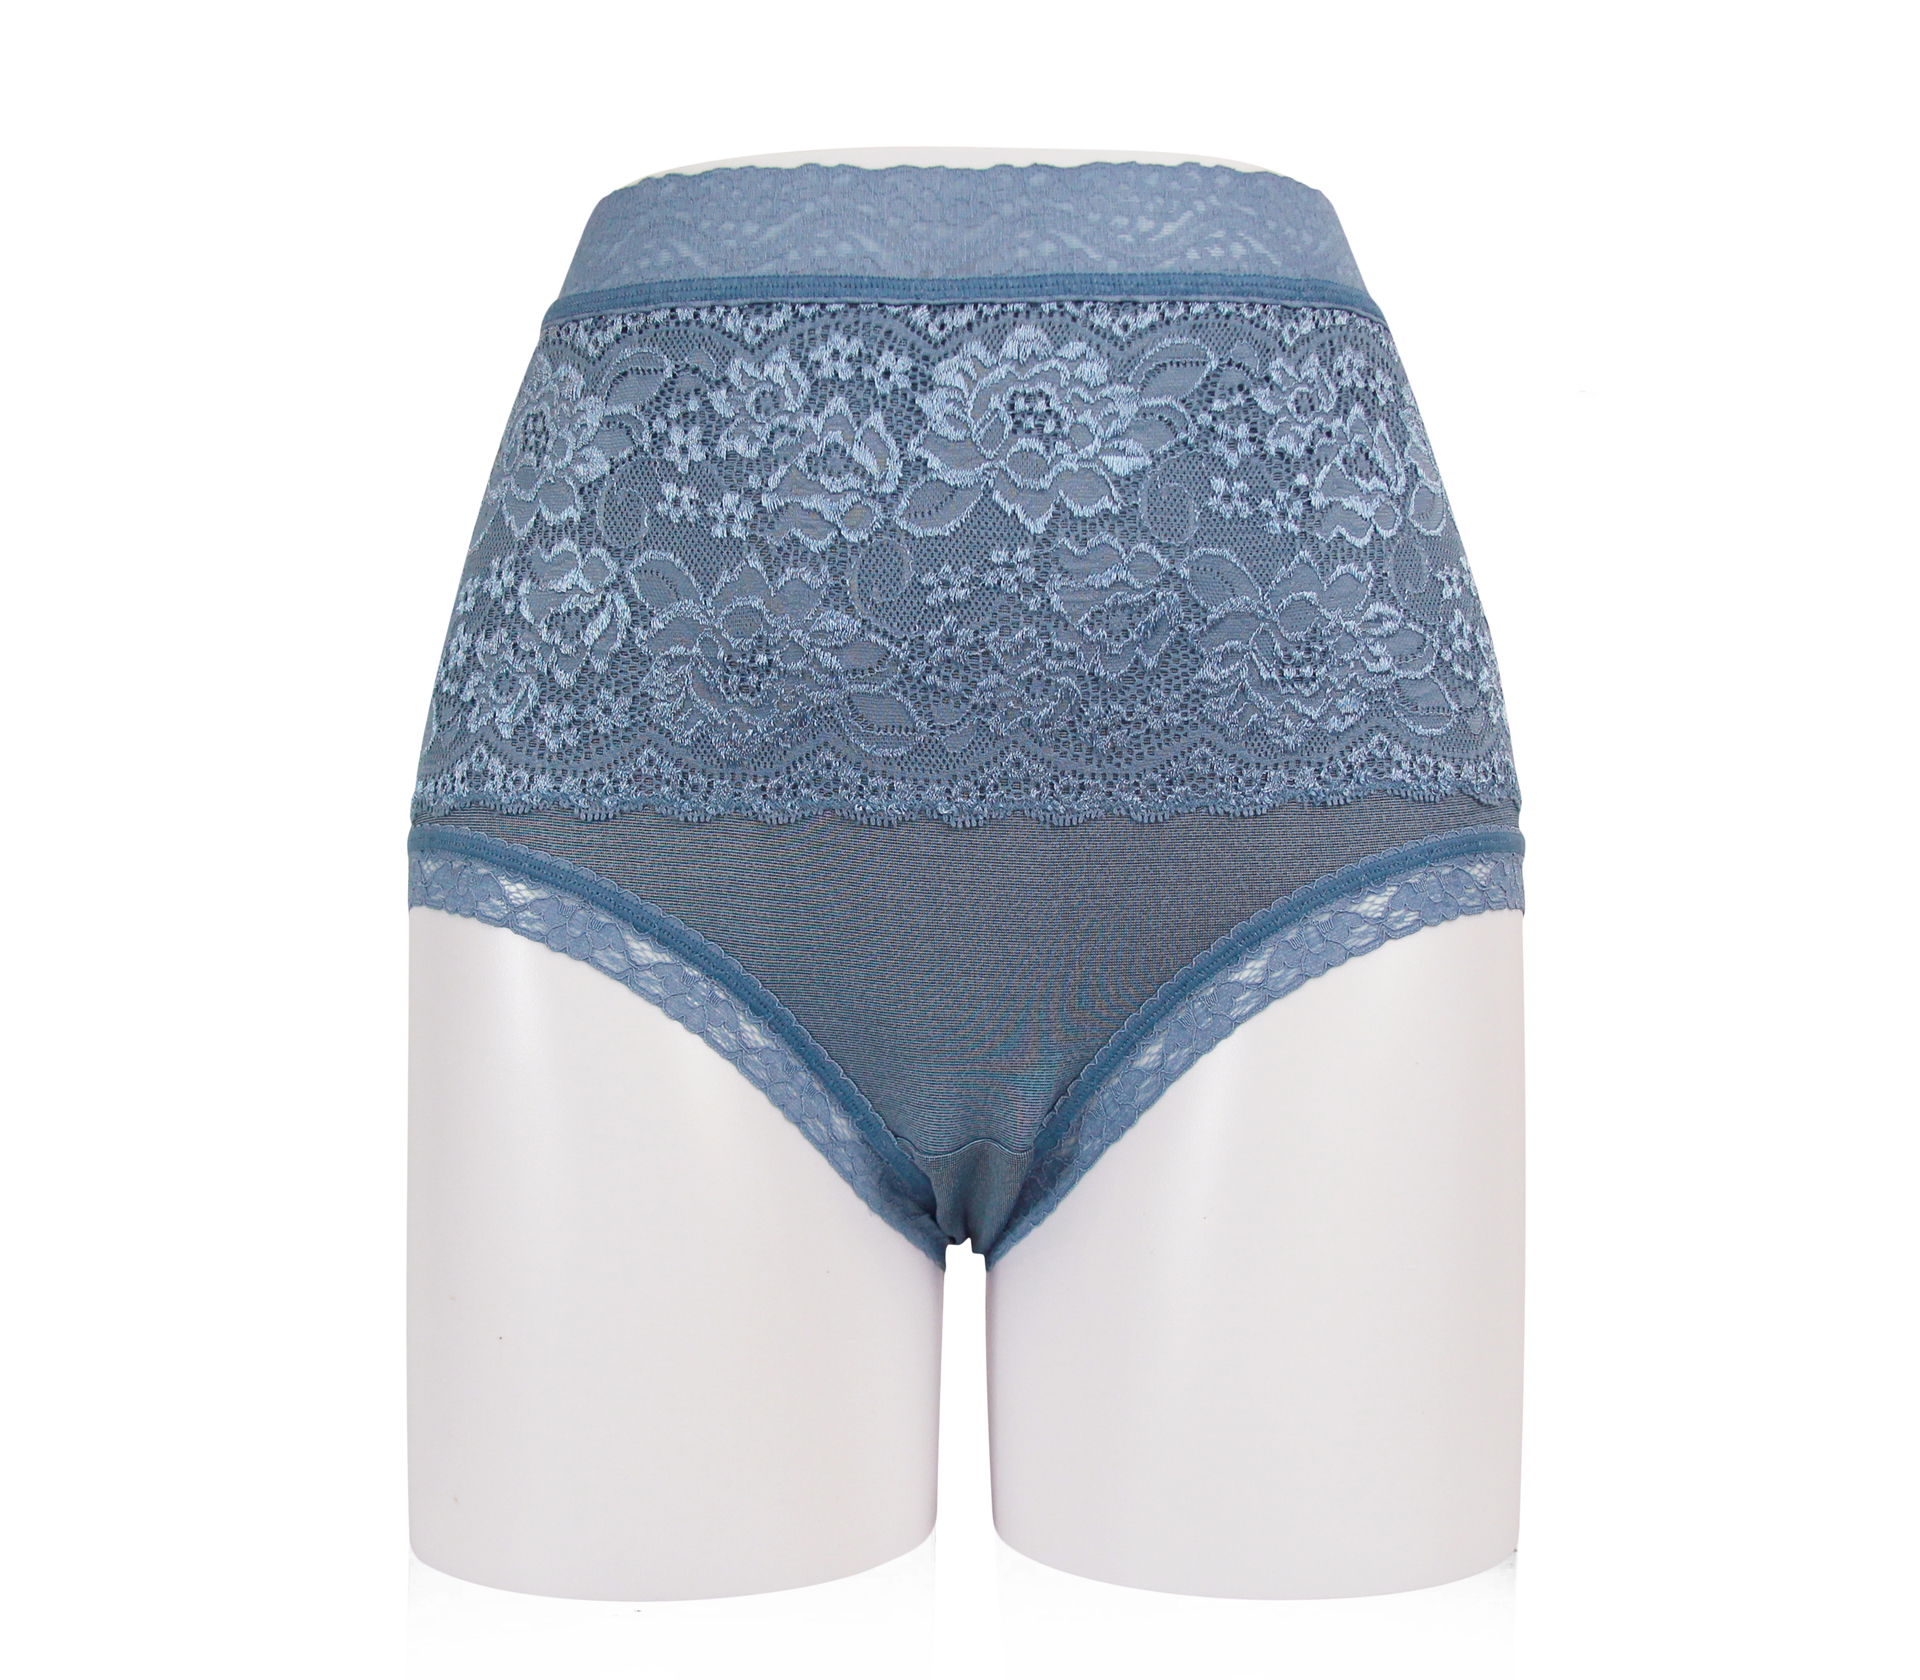 闕蘭絹奢華蕾絲碘紗蠶絲高腰褲 - M8803 (藍)